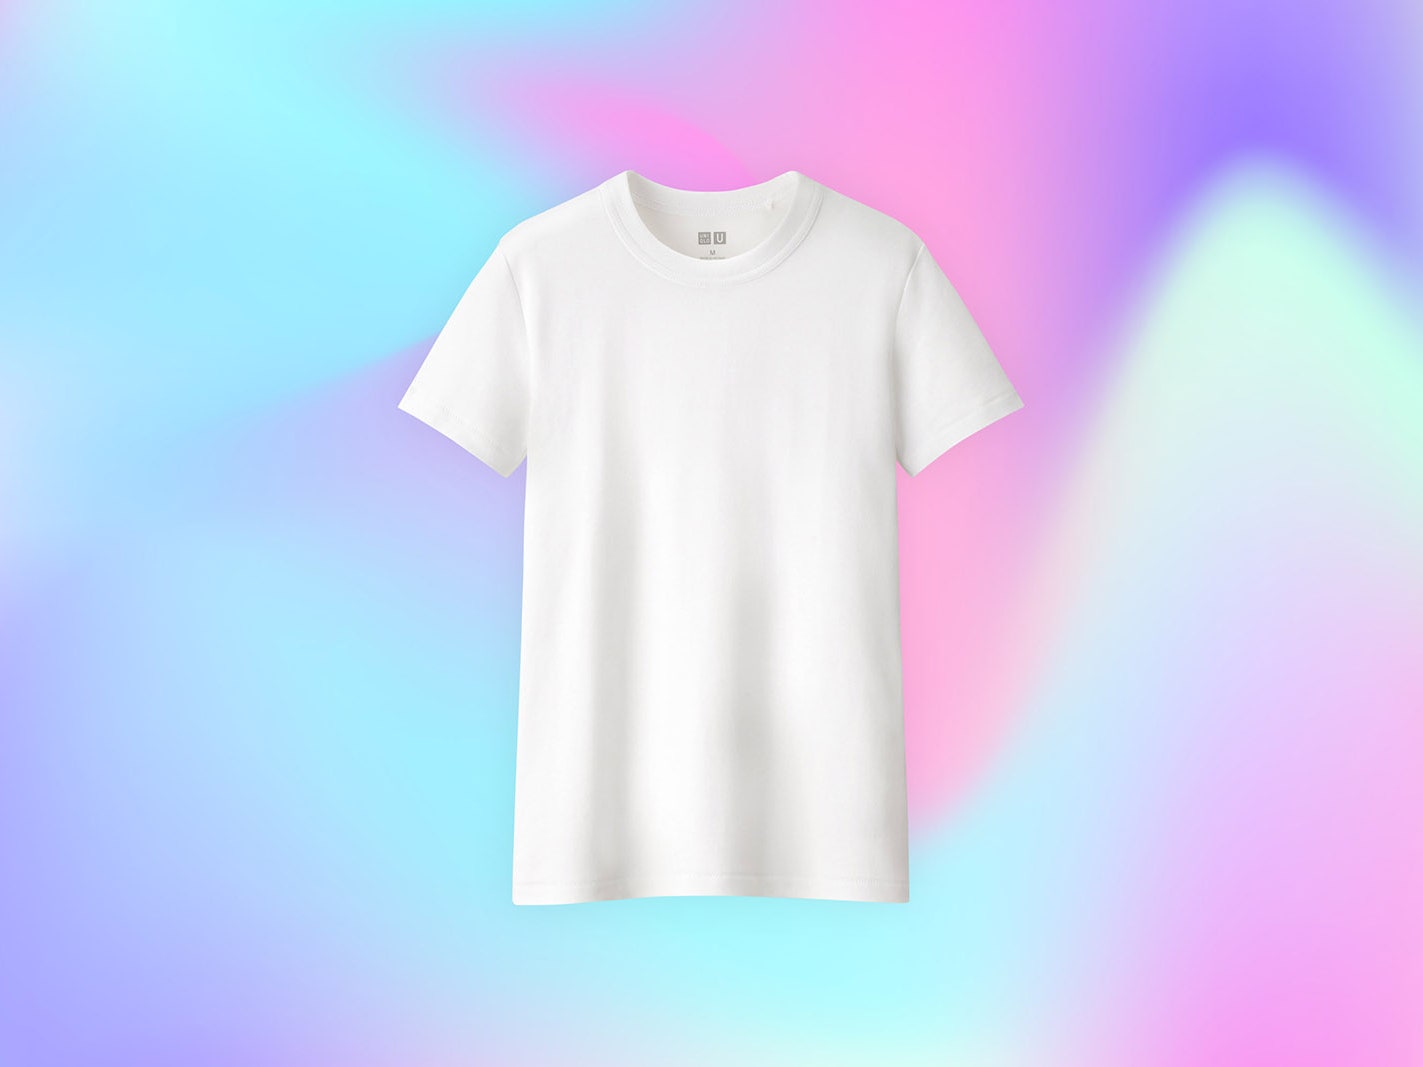 Идеальная база: где купить лучшую белую футболку, чтобы носить ее с чем угодно